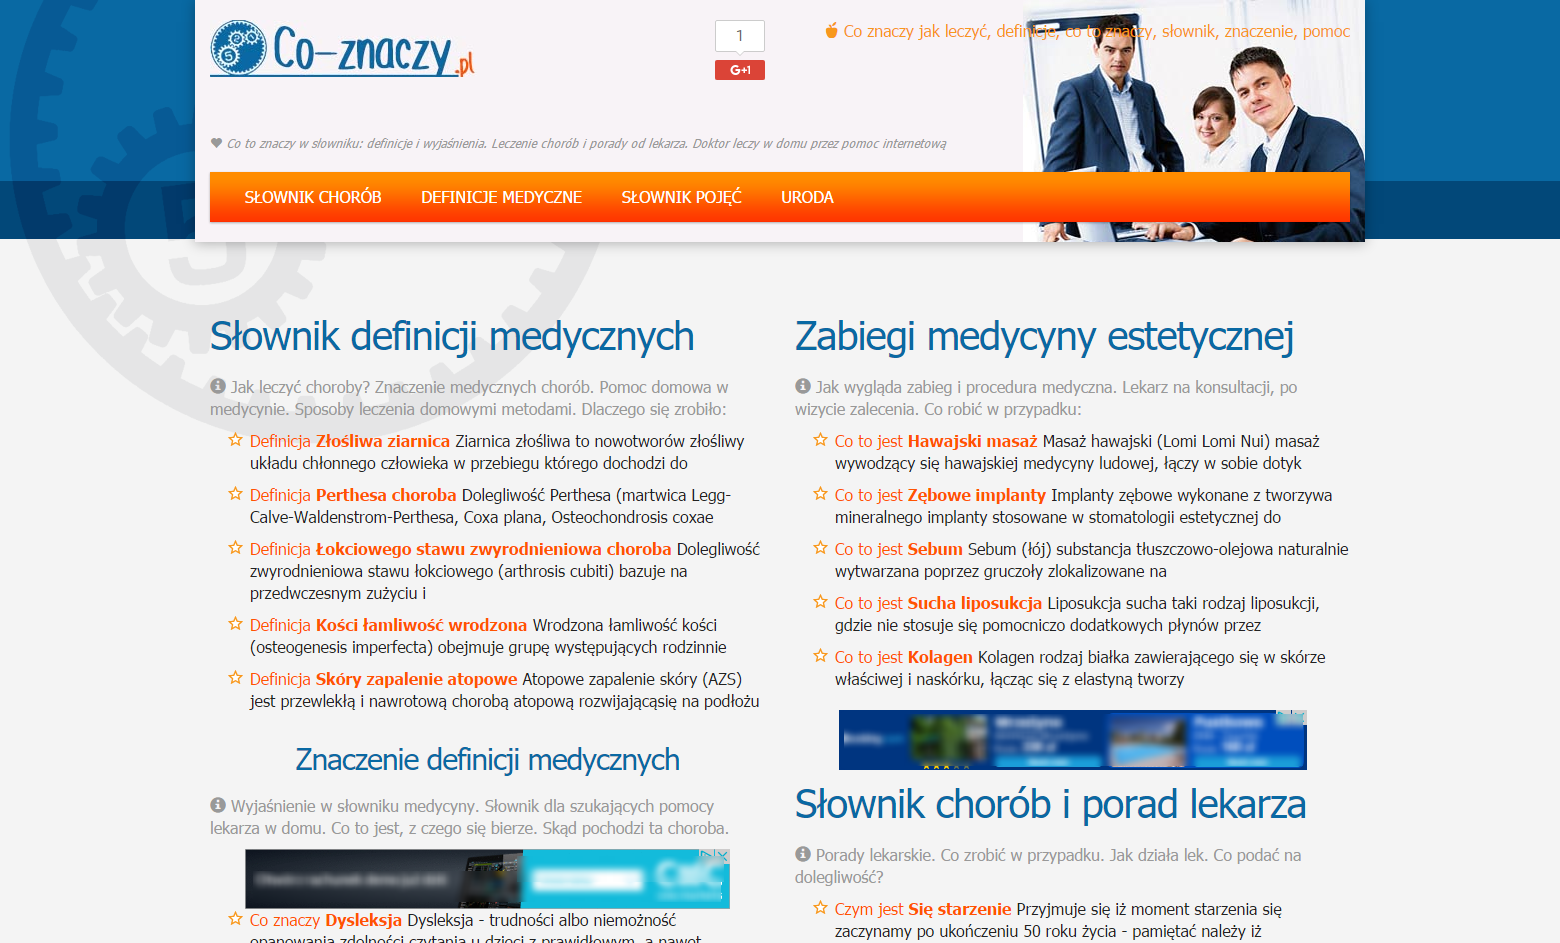 Project Co-Znaczy.pl